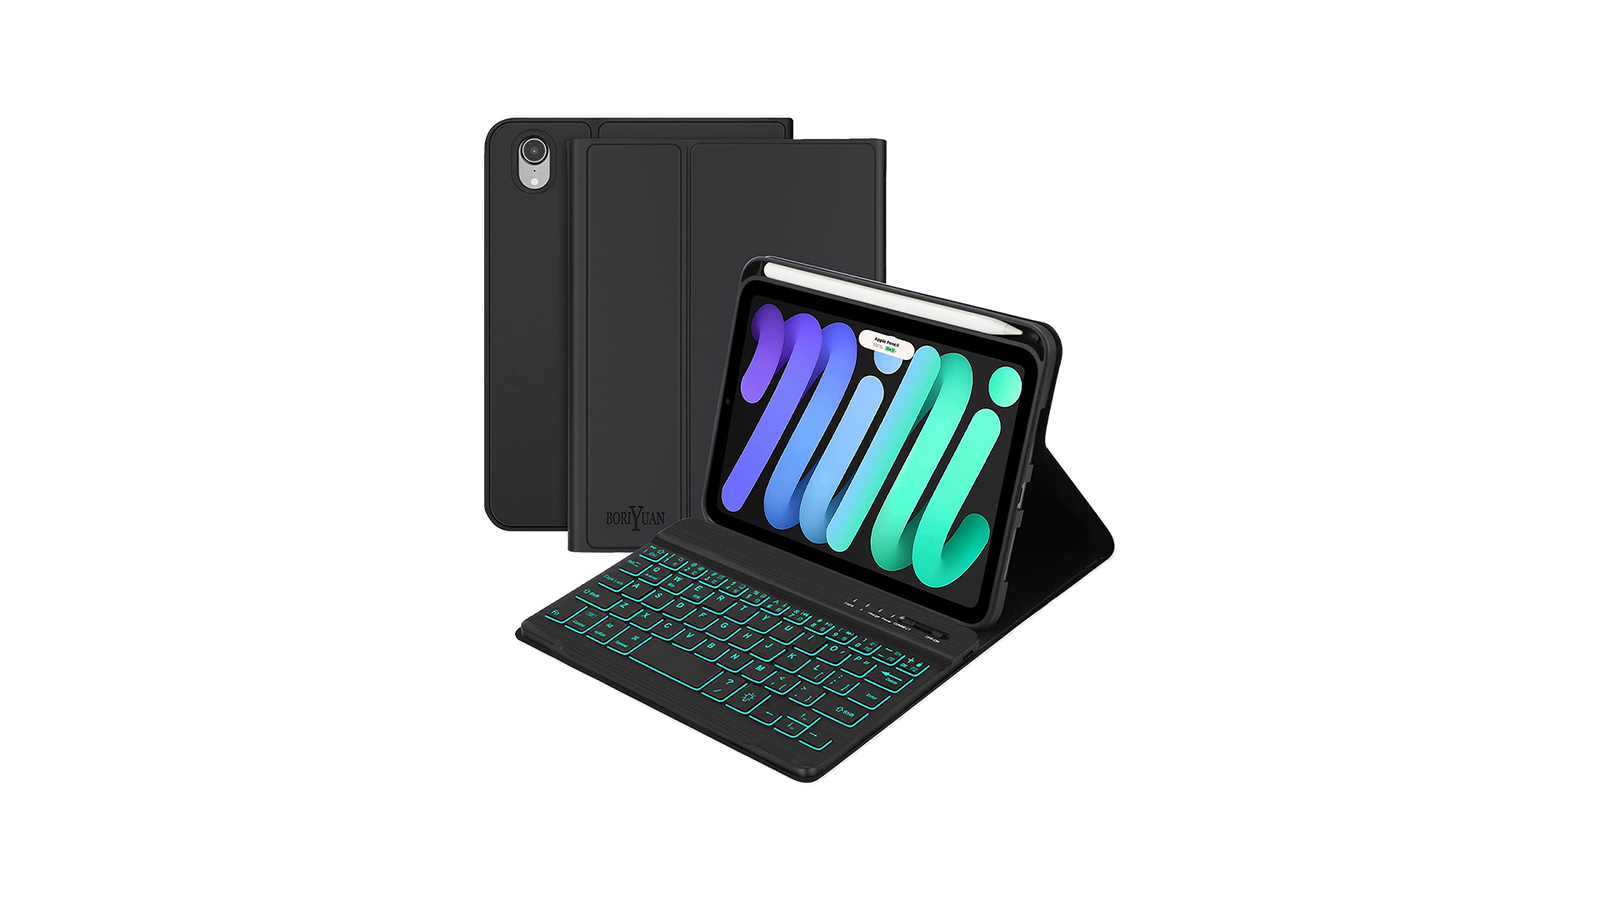 Boriyuan iPad Mini 6 Keyboard Case - The best iPad mini case with keyboard